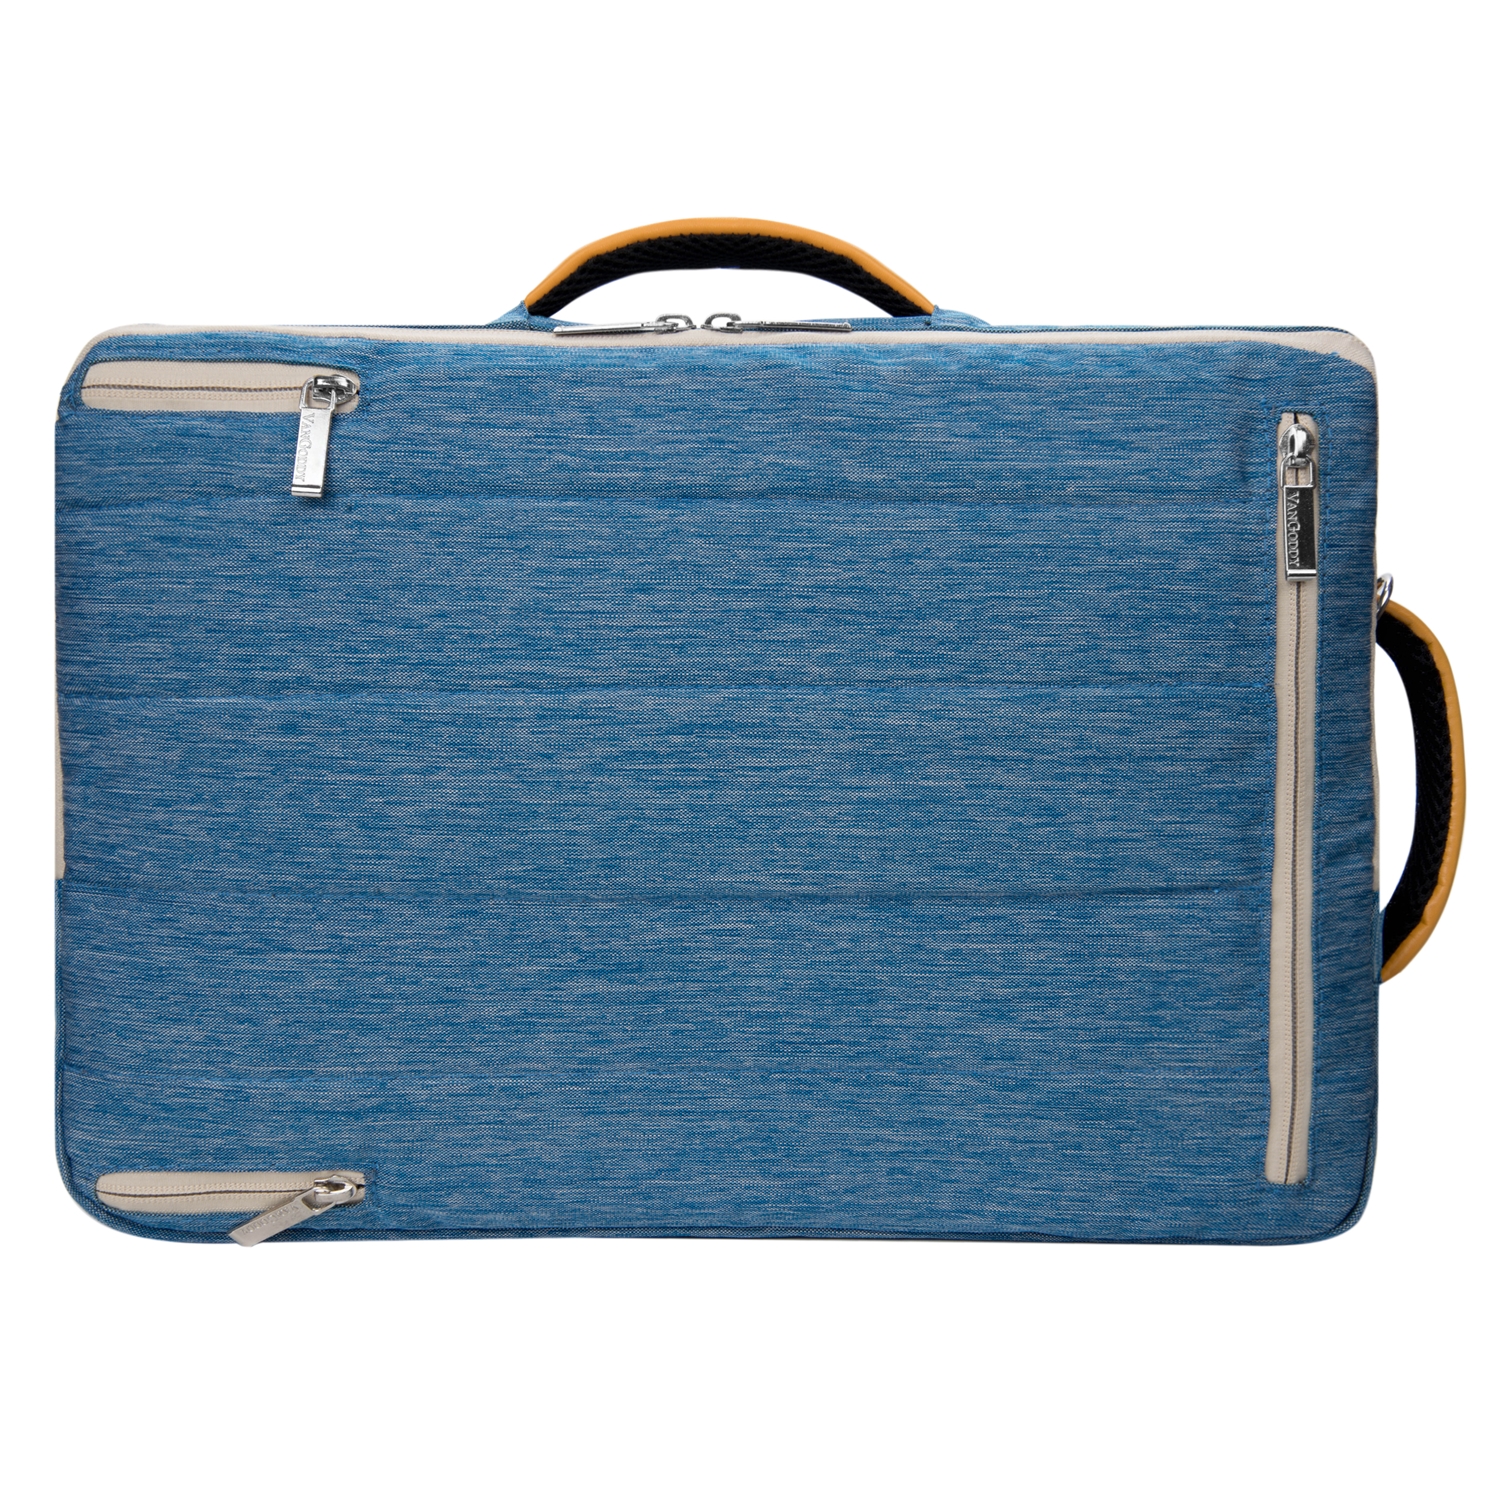 VANGODDY Slate Laptop Messenger / Carrying / Backpack Bag with Adjustable Strap fits 15.6 Laptops